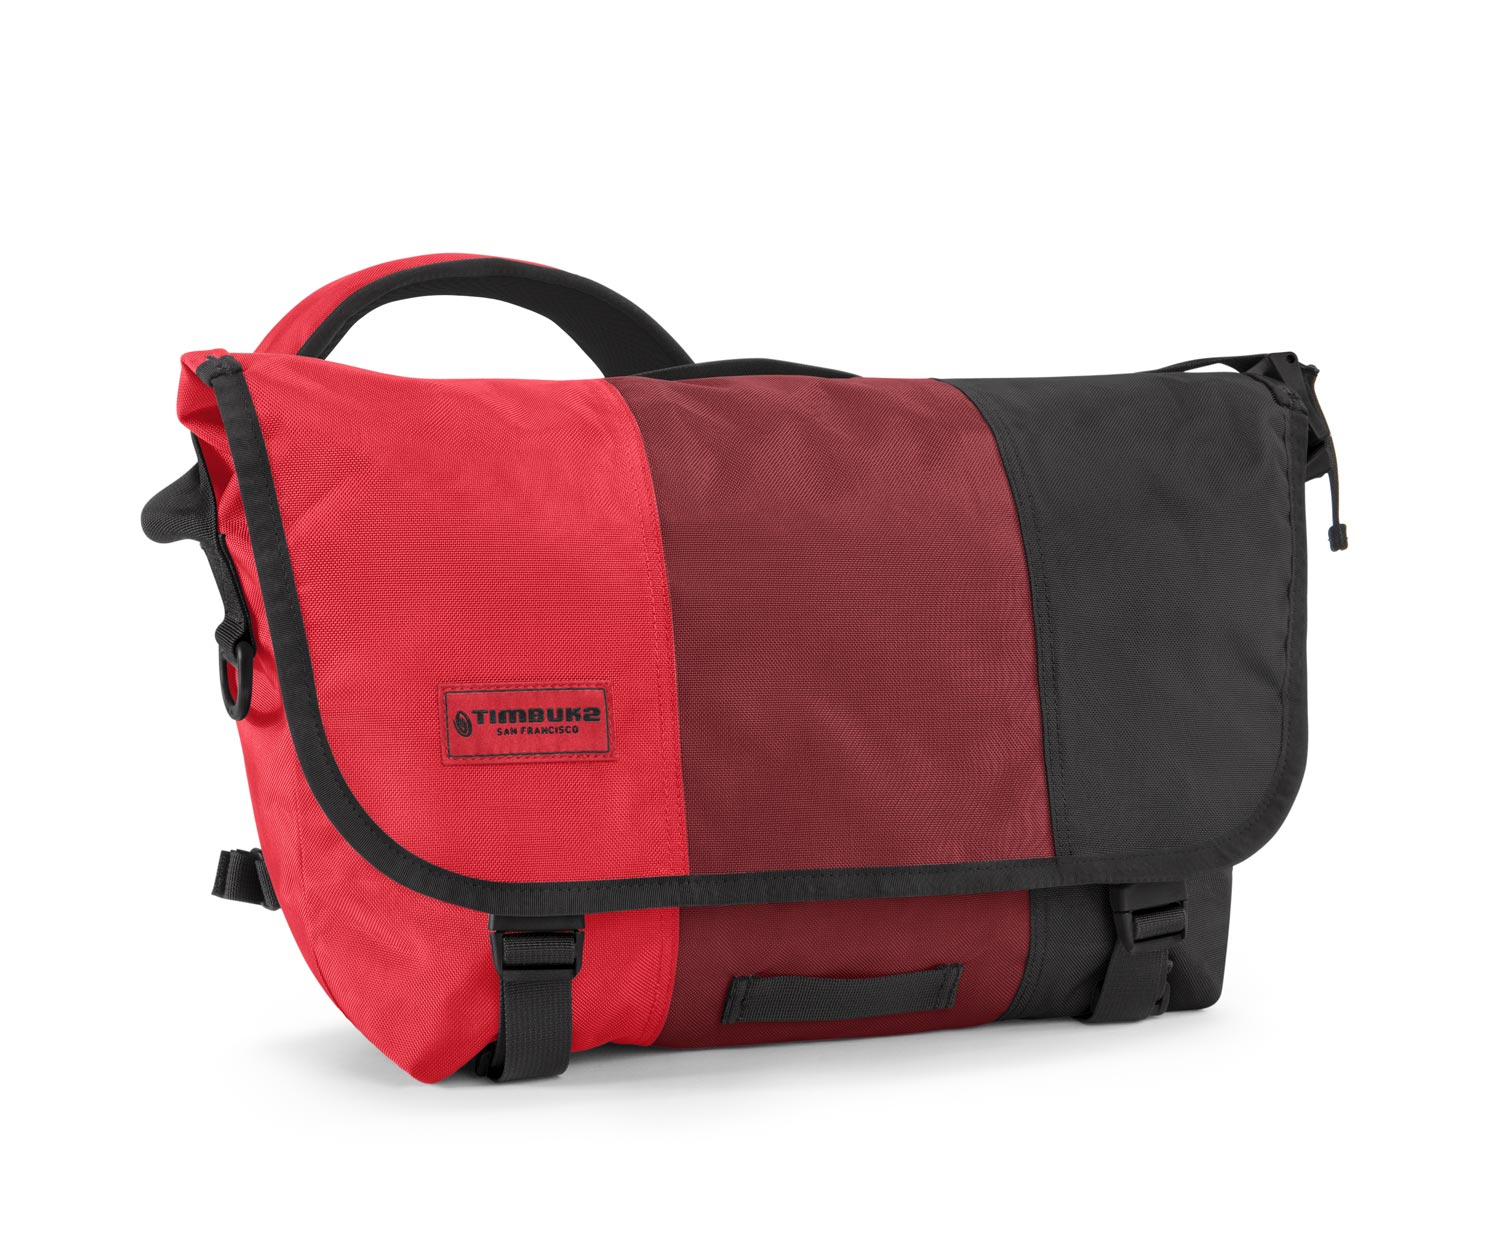 Messenger Bags — Bopanna Design